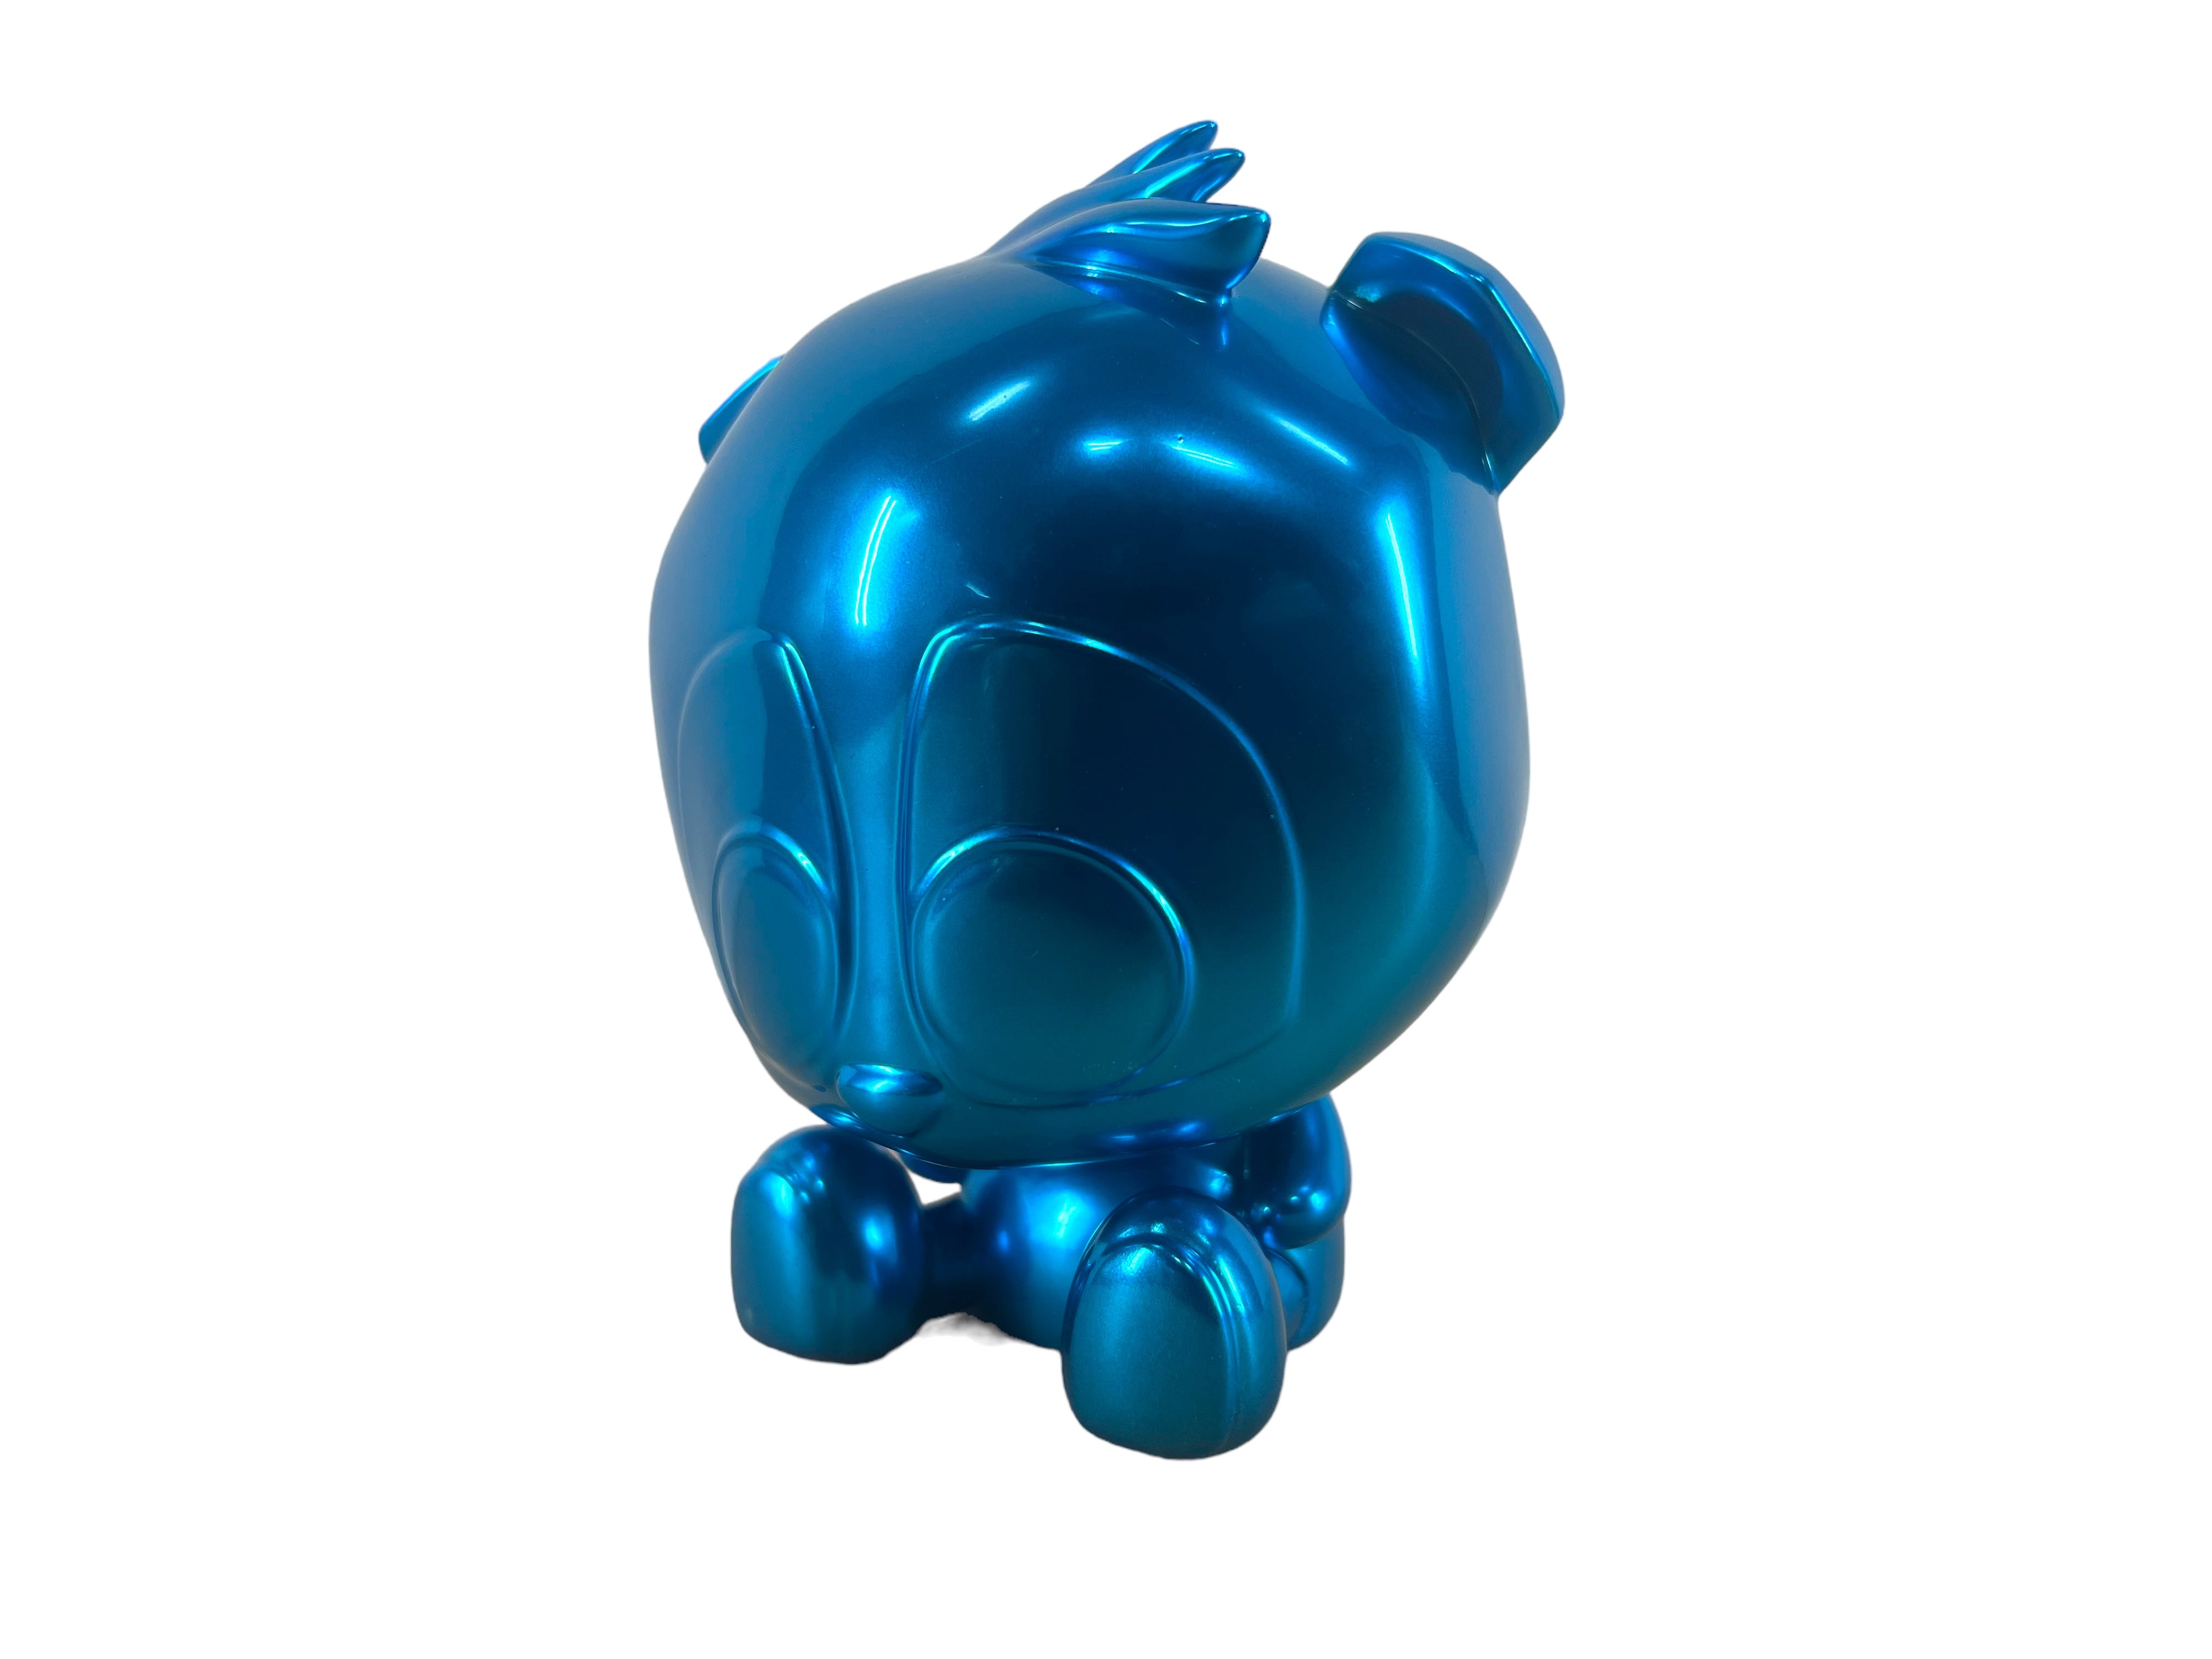 Sad Panda - Blue Hawaiian By 7Sketches